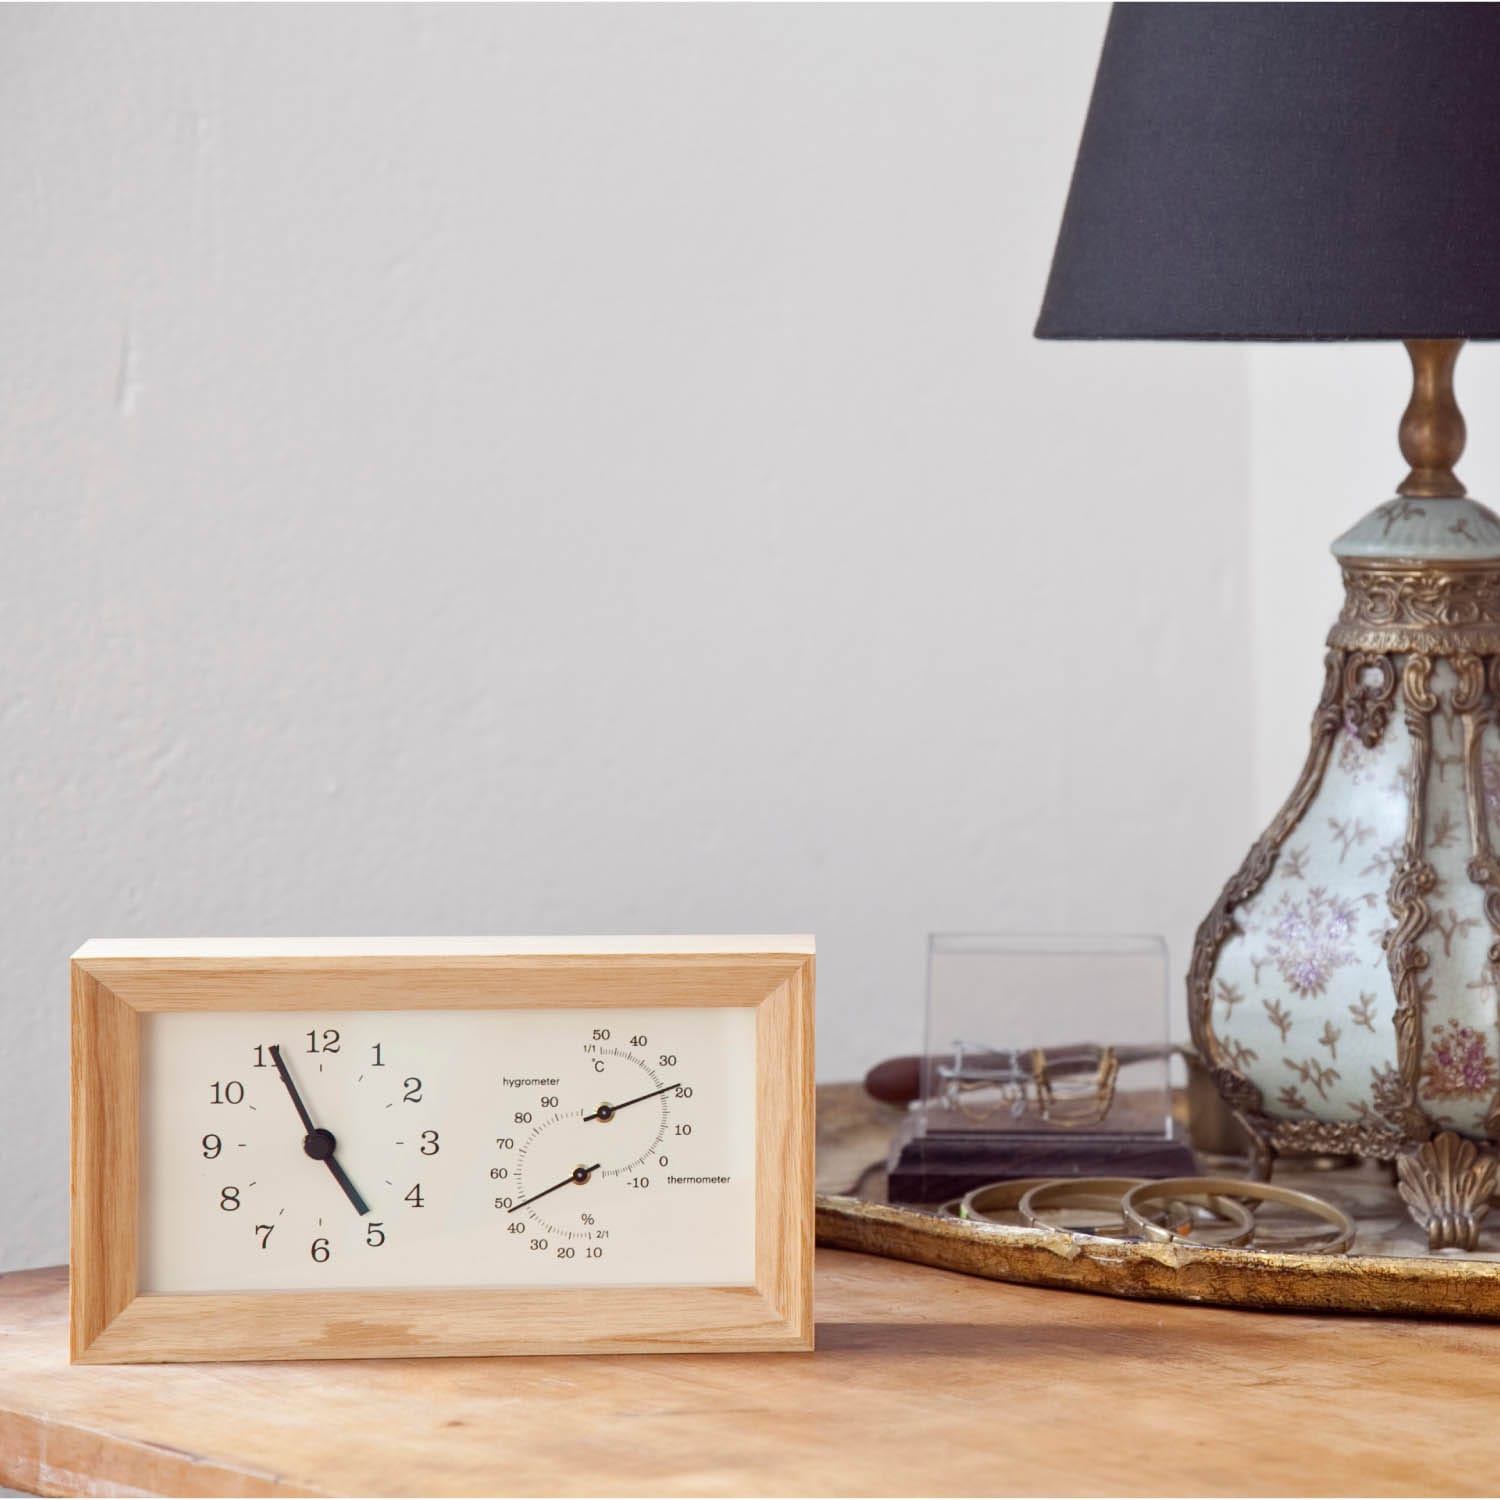 最新作 Lemnos レムノス FRAME フレーム 置き時計 掛け時計 時計 温湿度計 温度 湿度 木製 ナチュラル ブラウン LC13-14  デザイン タカタレムノス